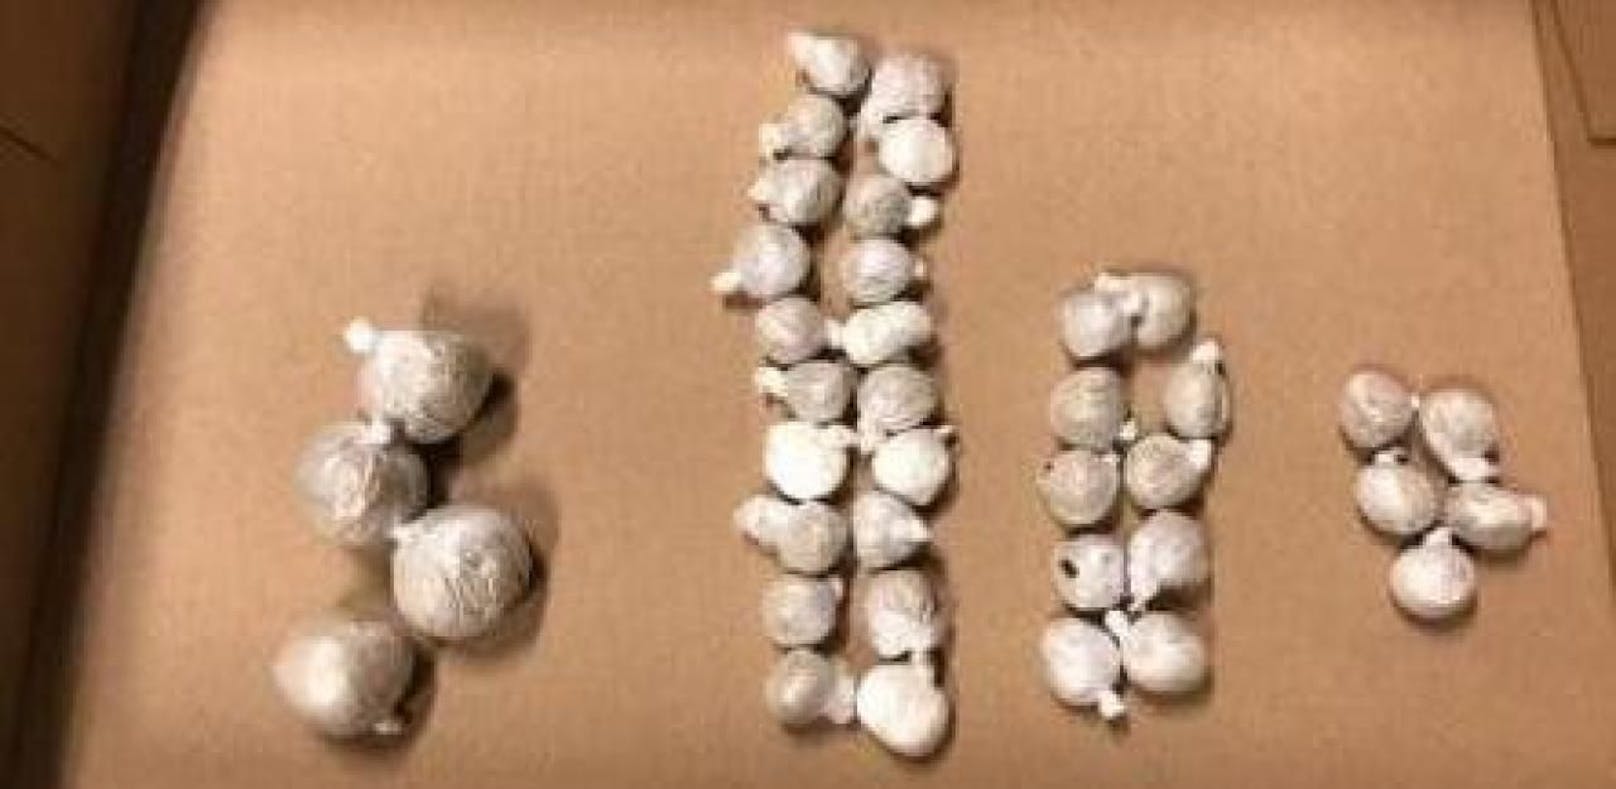 39 Kokain-Kugeln konnten sichergestellt werden.